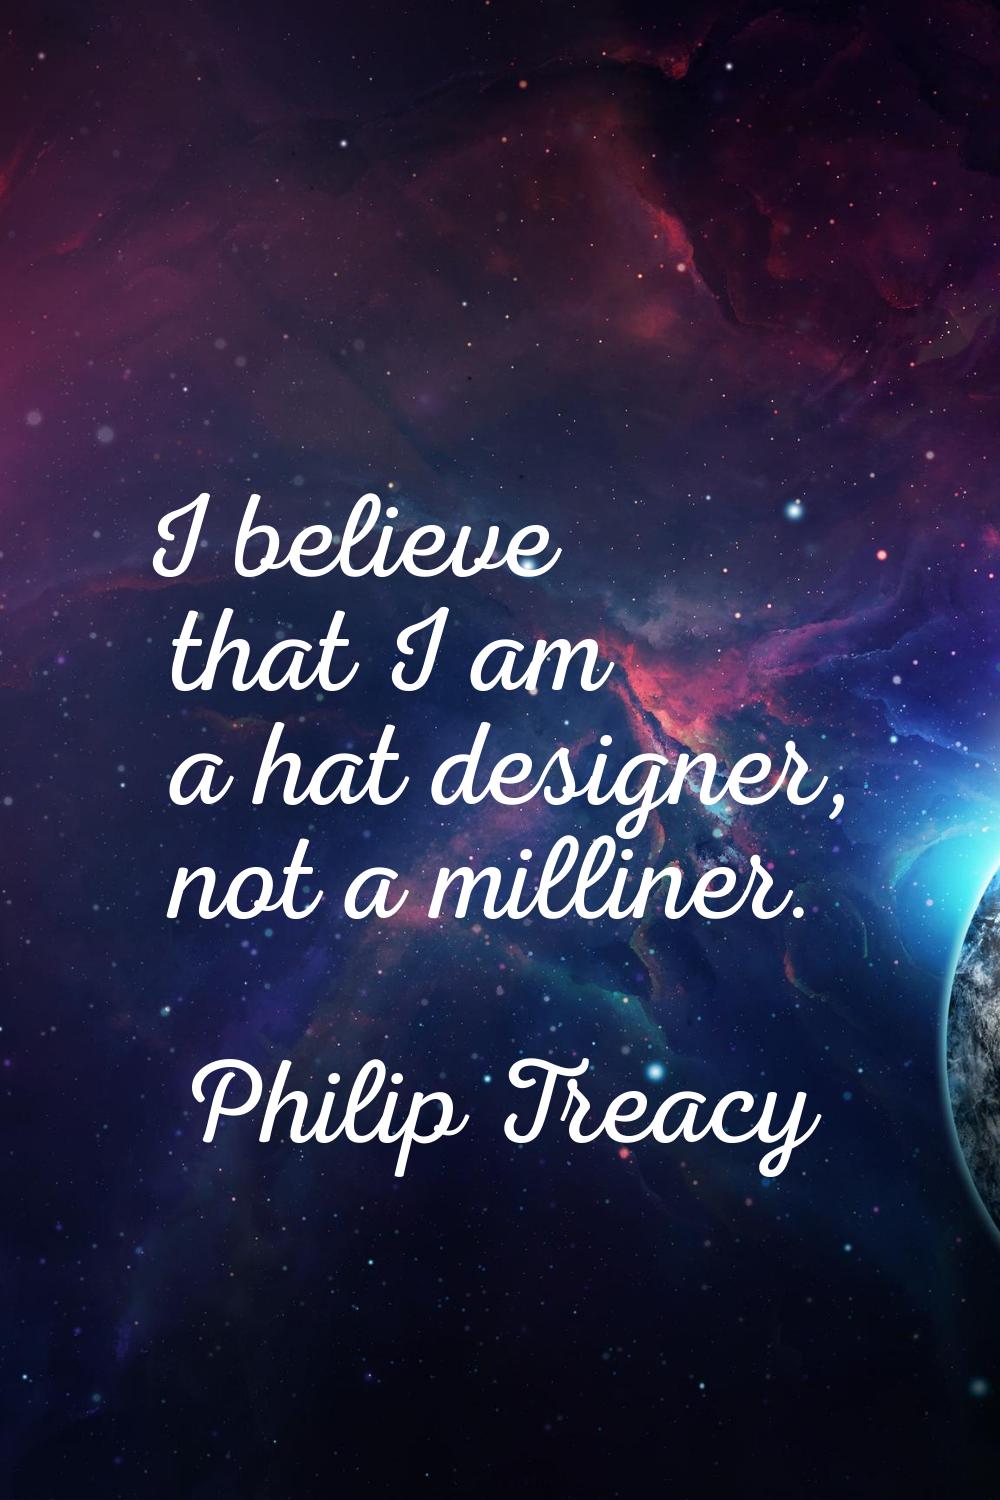 I believe that I am a hat designer, not a milliner.